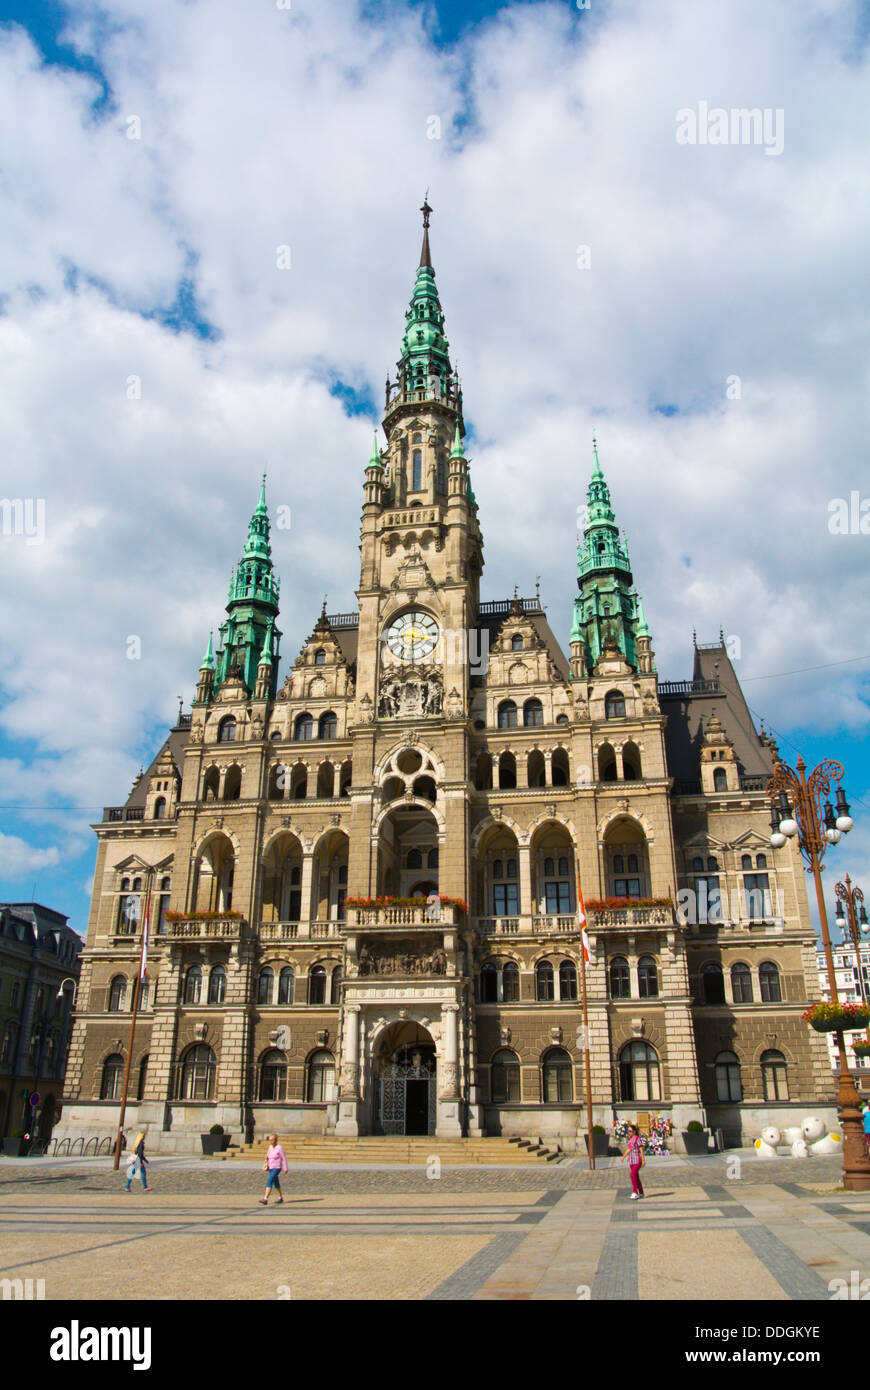 Radnice l'hôtel de ville (1892) par Franz Neumann à Benesovo namesti square Liberec République Tchèque Europe Banque D'Images